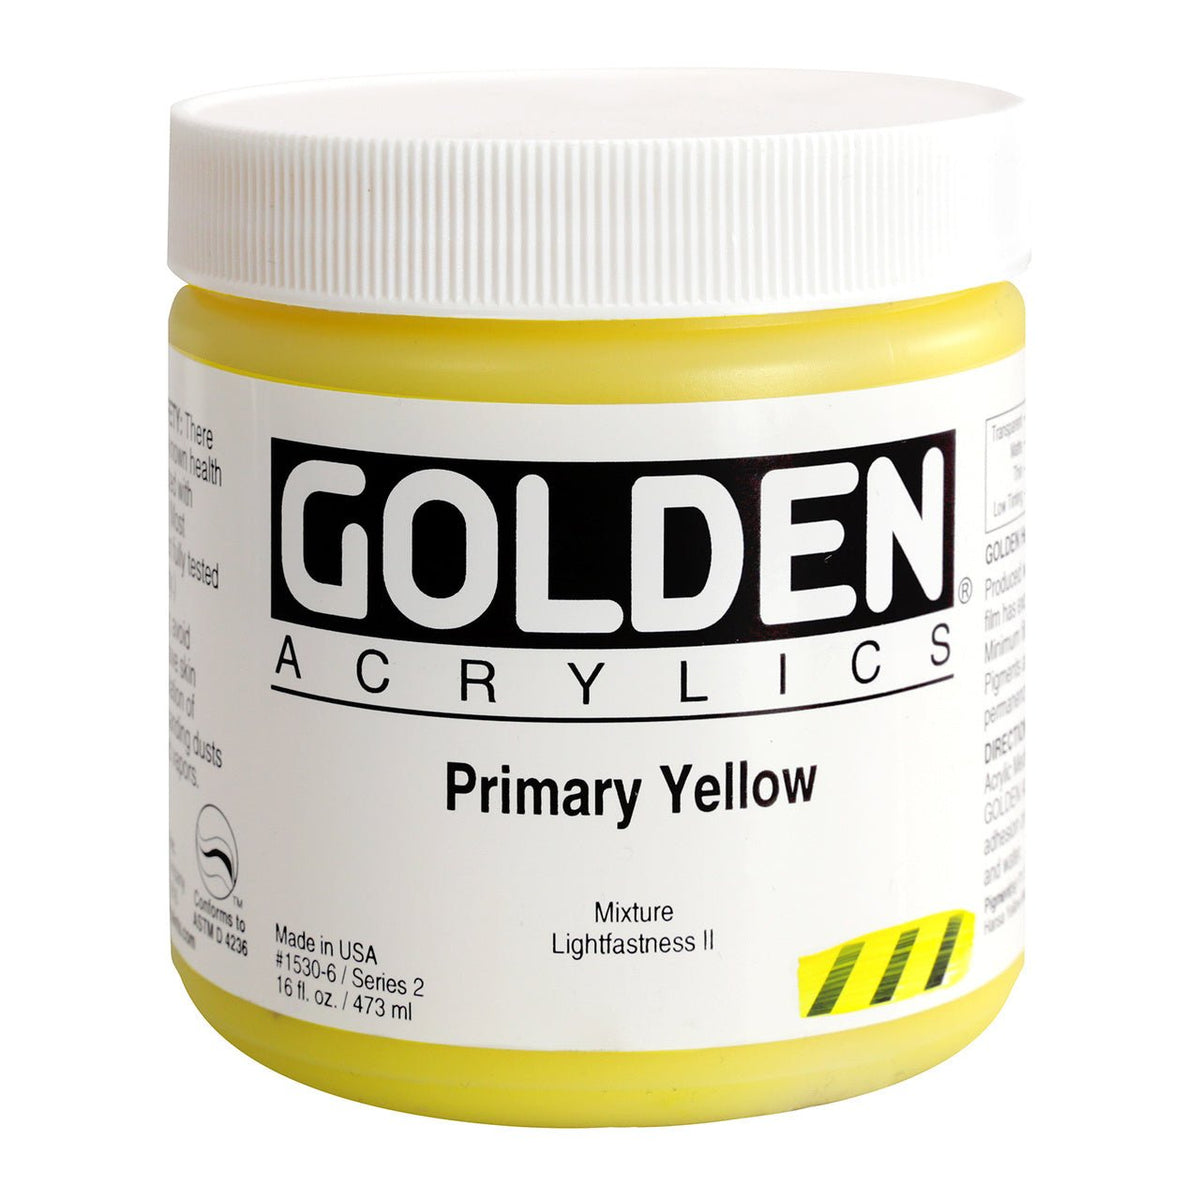 Golden Heavy Body Acrylic Primary Yellow 16 oz - merriartist.com